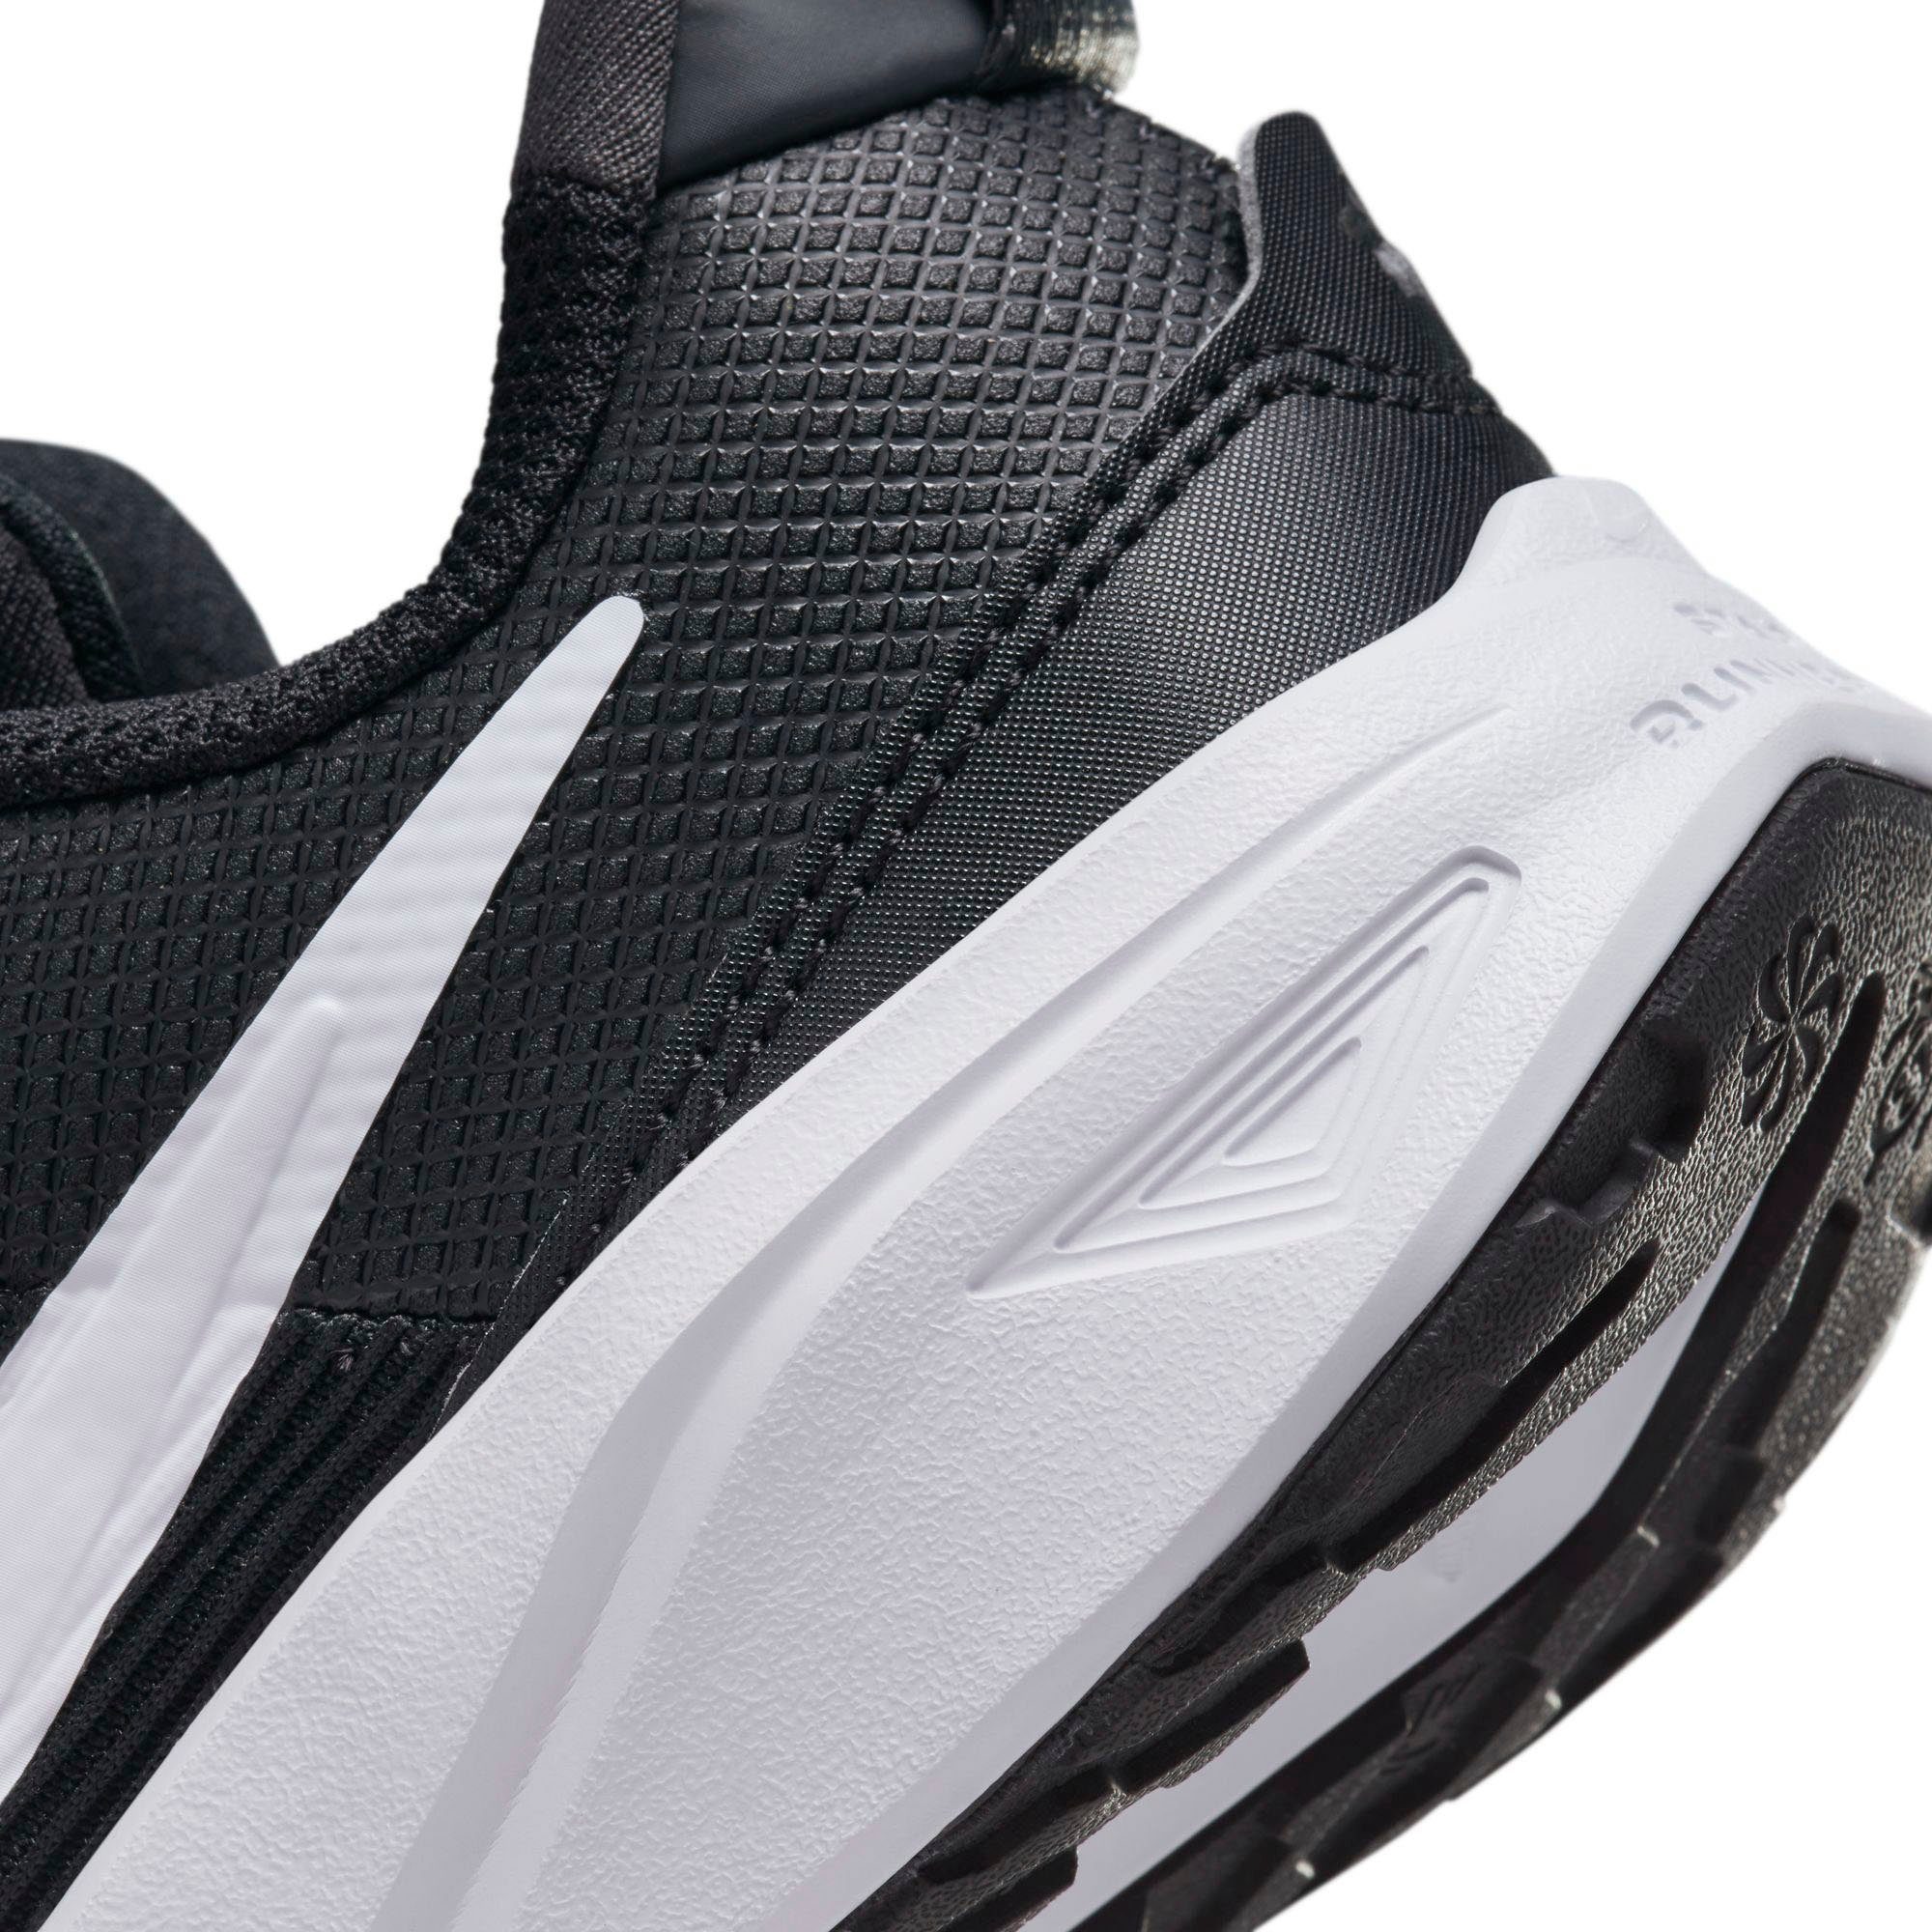 STAR schwarz-weiß 4 RUNNER Laufschuh Nike (PS)